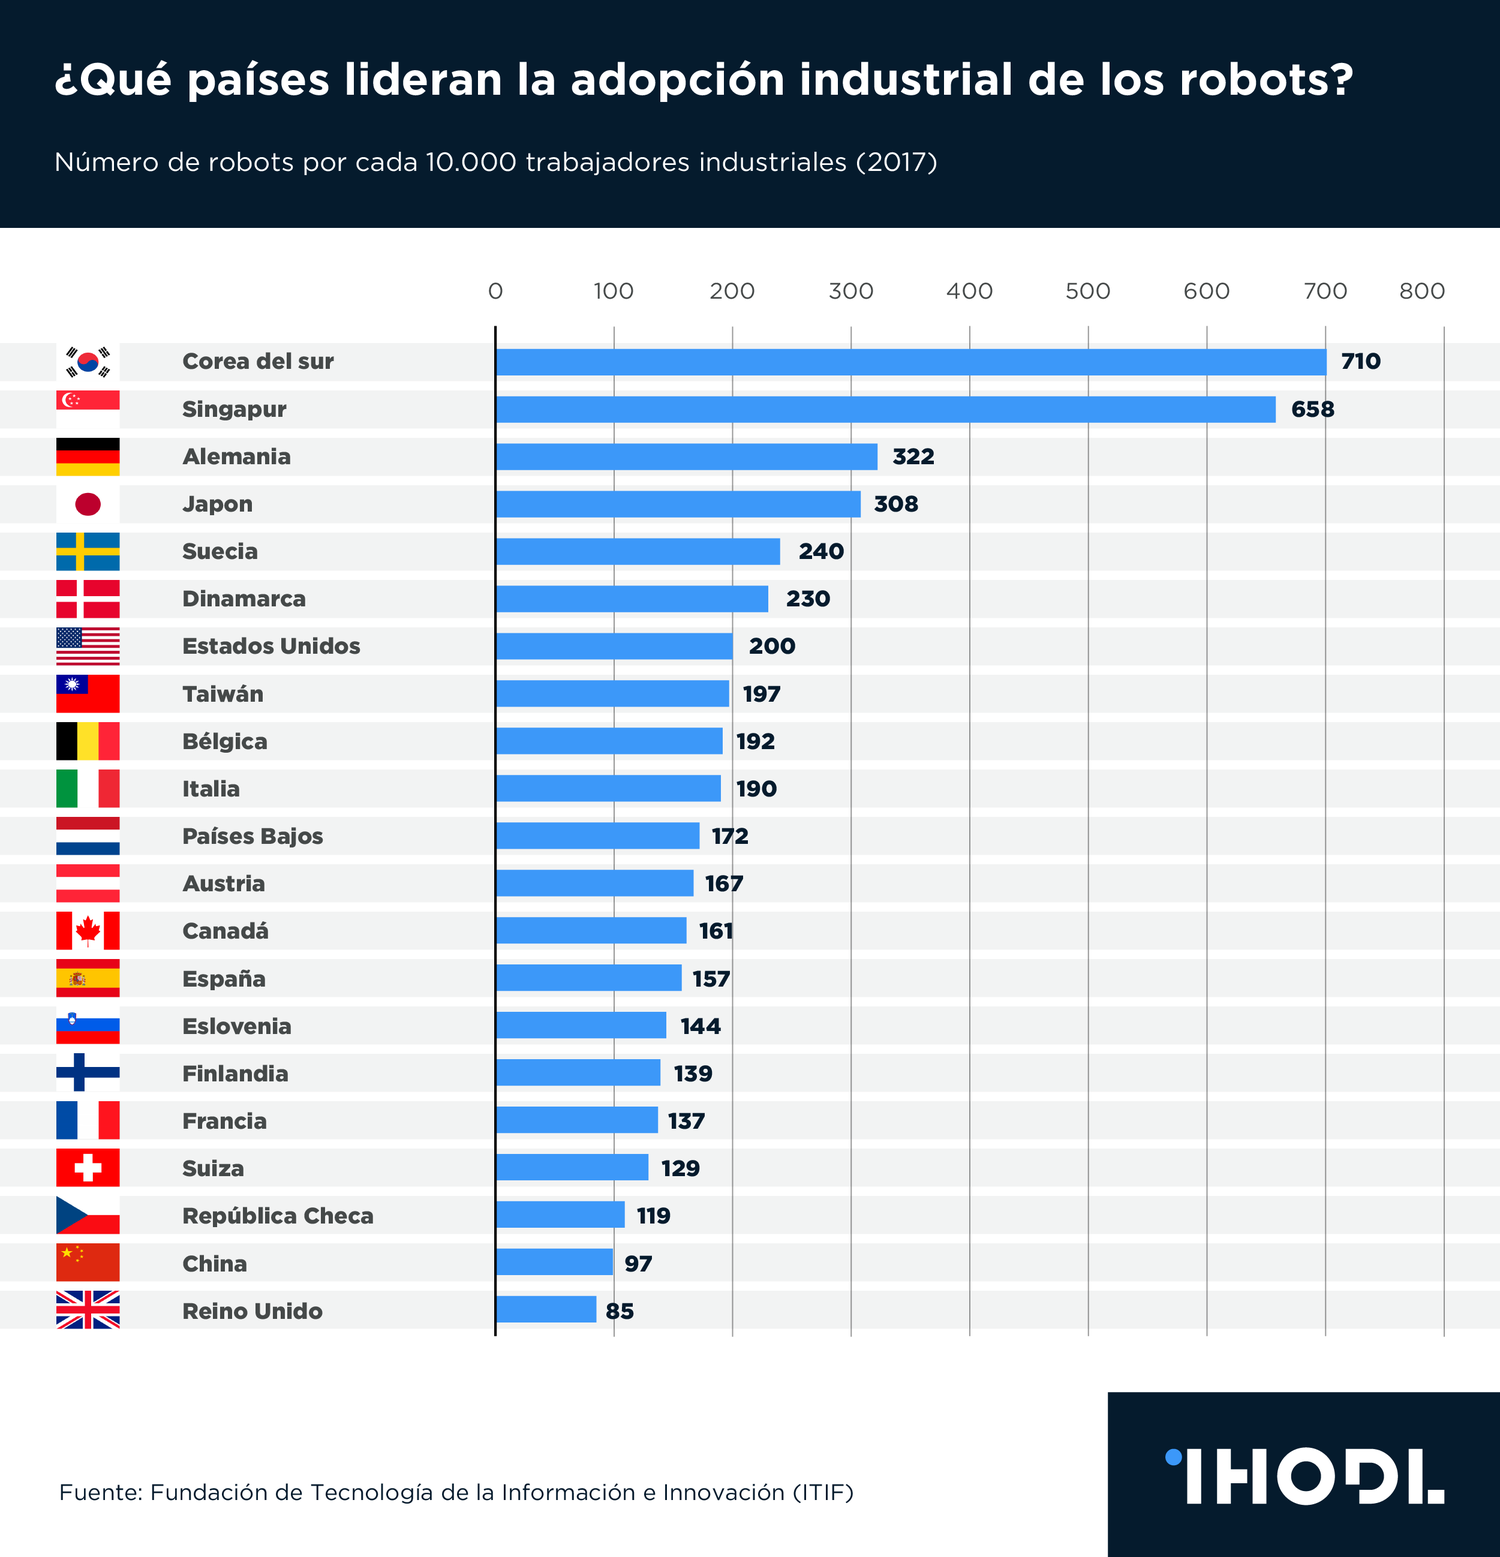 Количество рабочих в россии. Число промышленных роботов разных стран. Количество промышленных роботов. Количество промышленных роботов по странам. Количество промышленных роботов в мире.